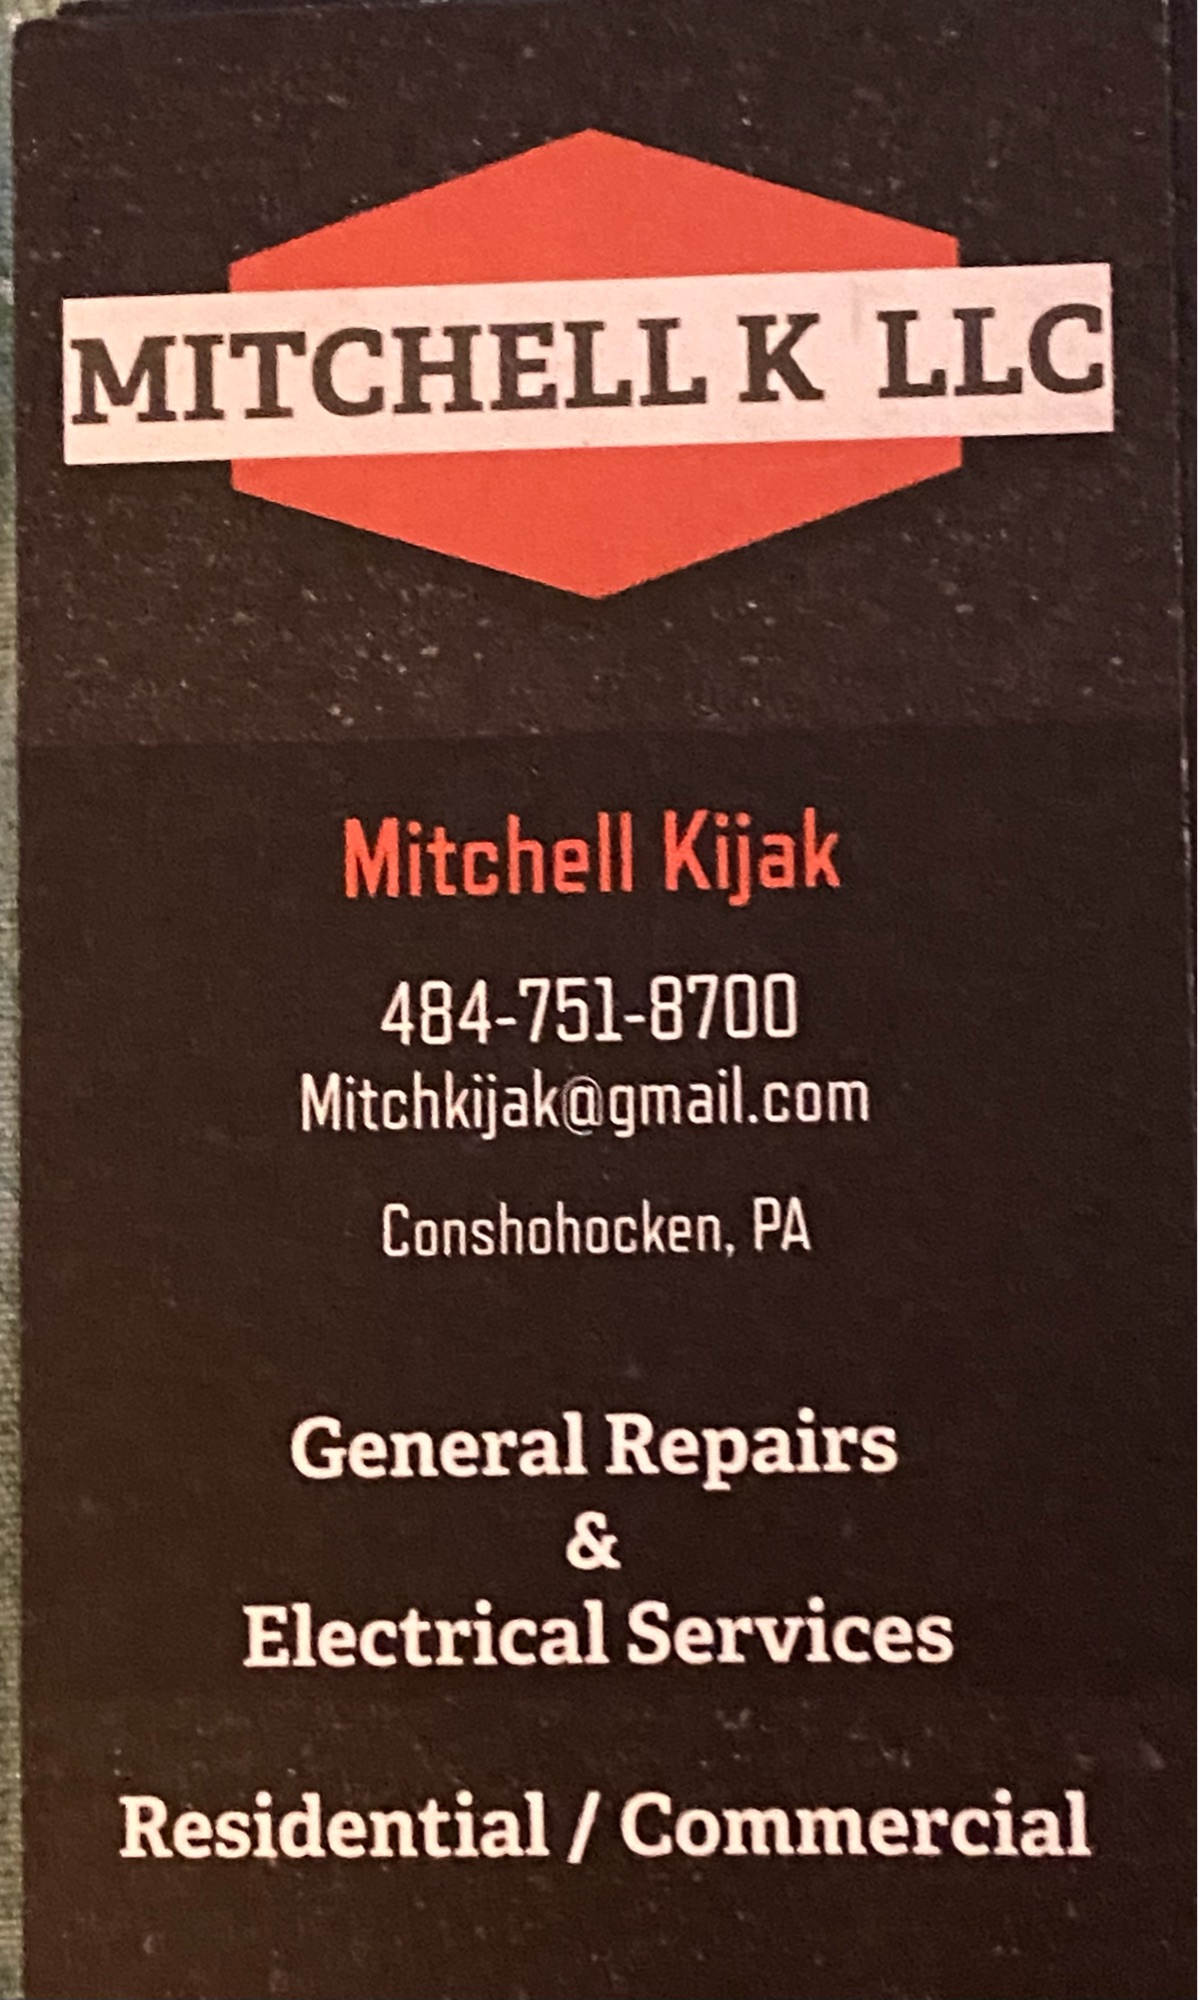 Mitchell K LLC Logo